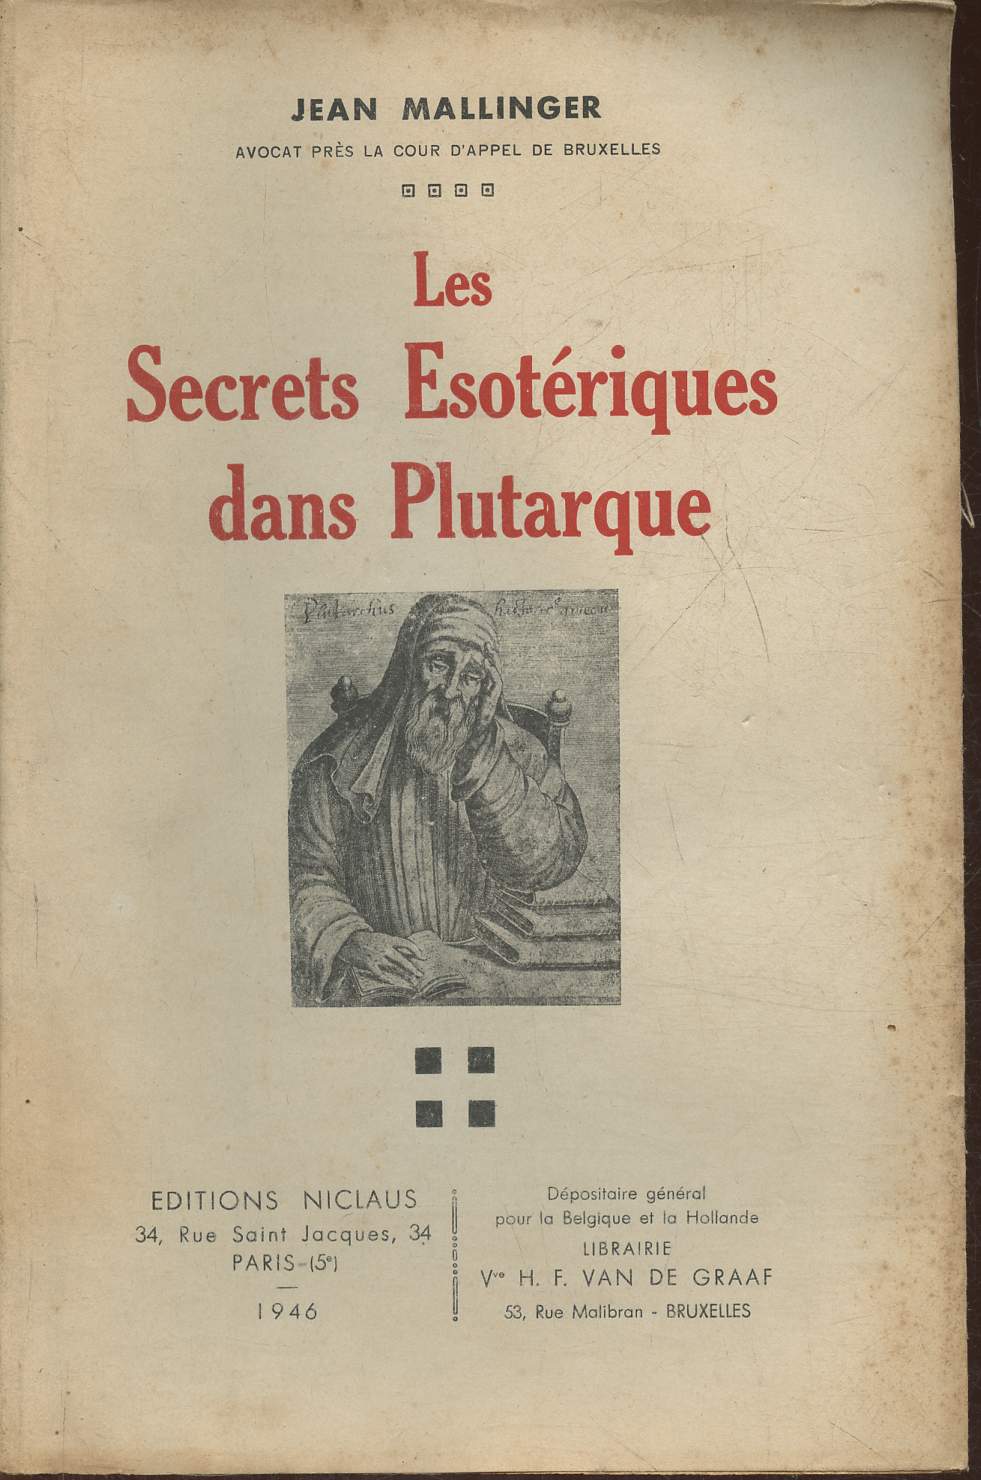 Les secrets sotriques dans Plutarque